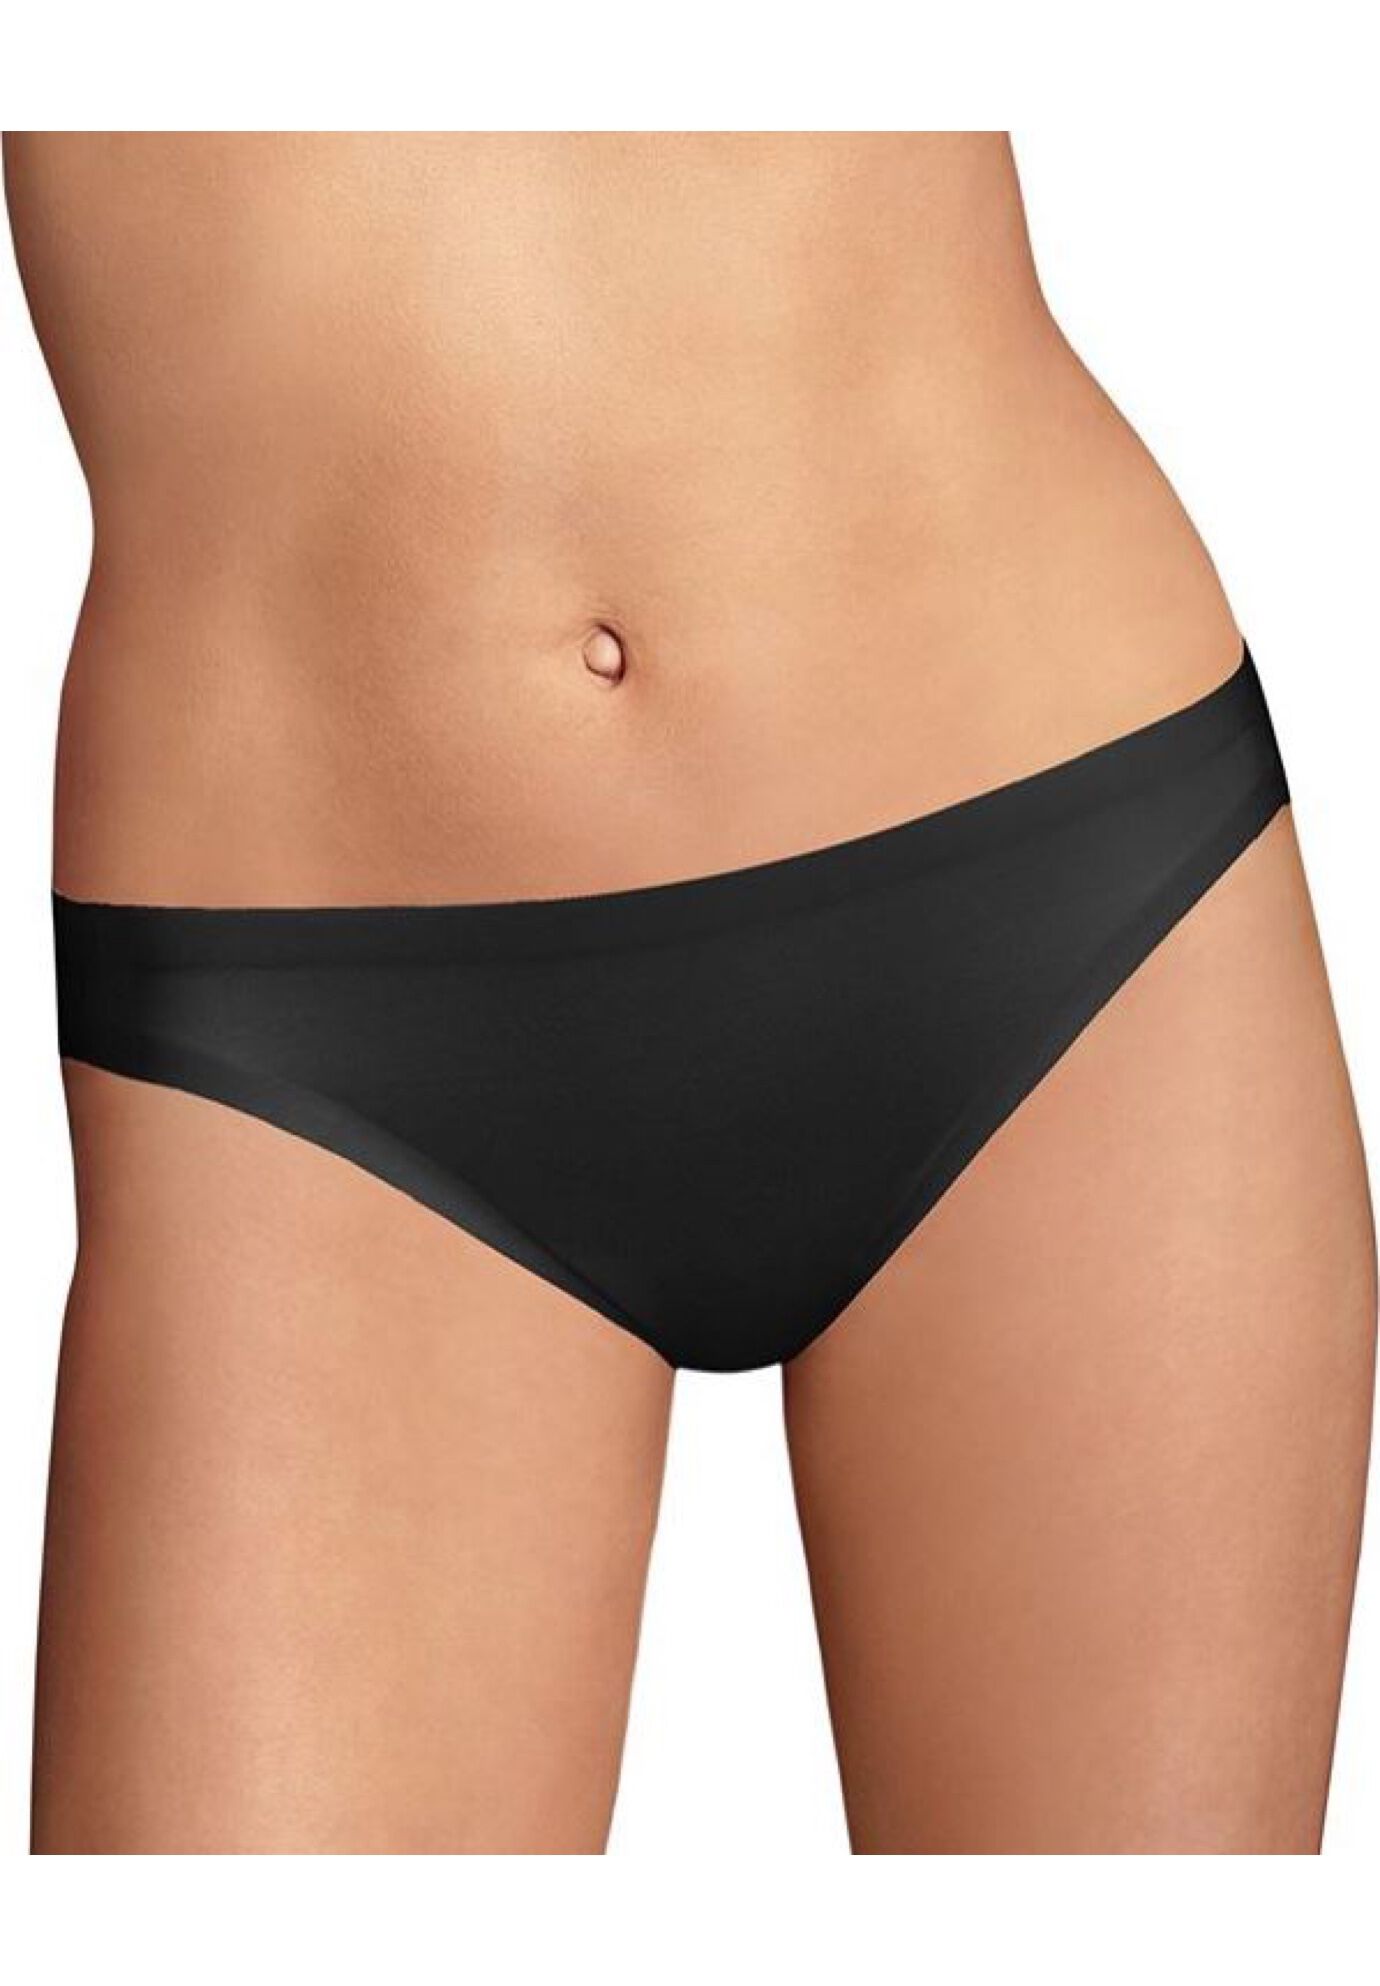 Plus Size Women's Comfort Devotion Bikini by Maidenform in Black (Size 5)